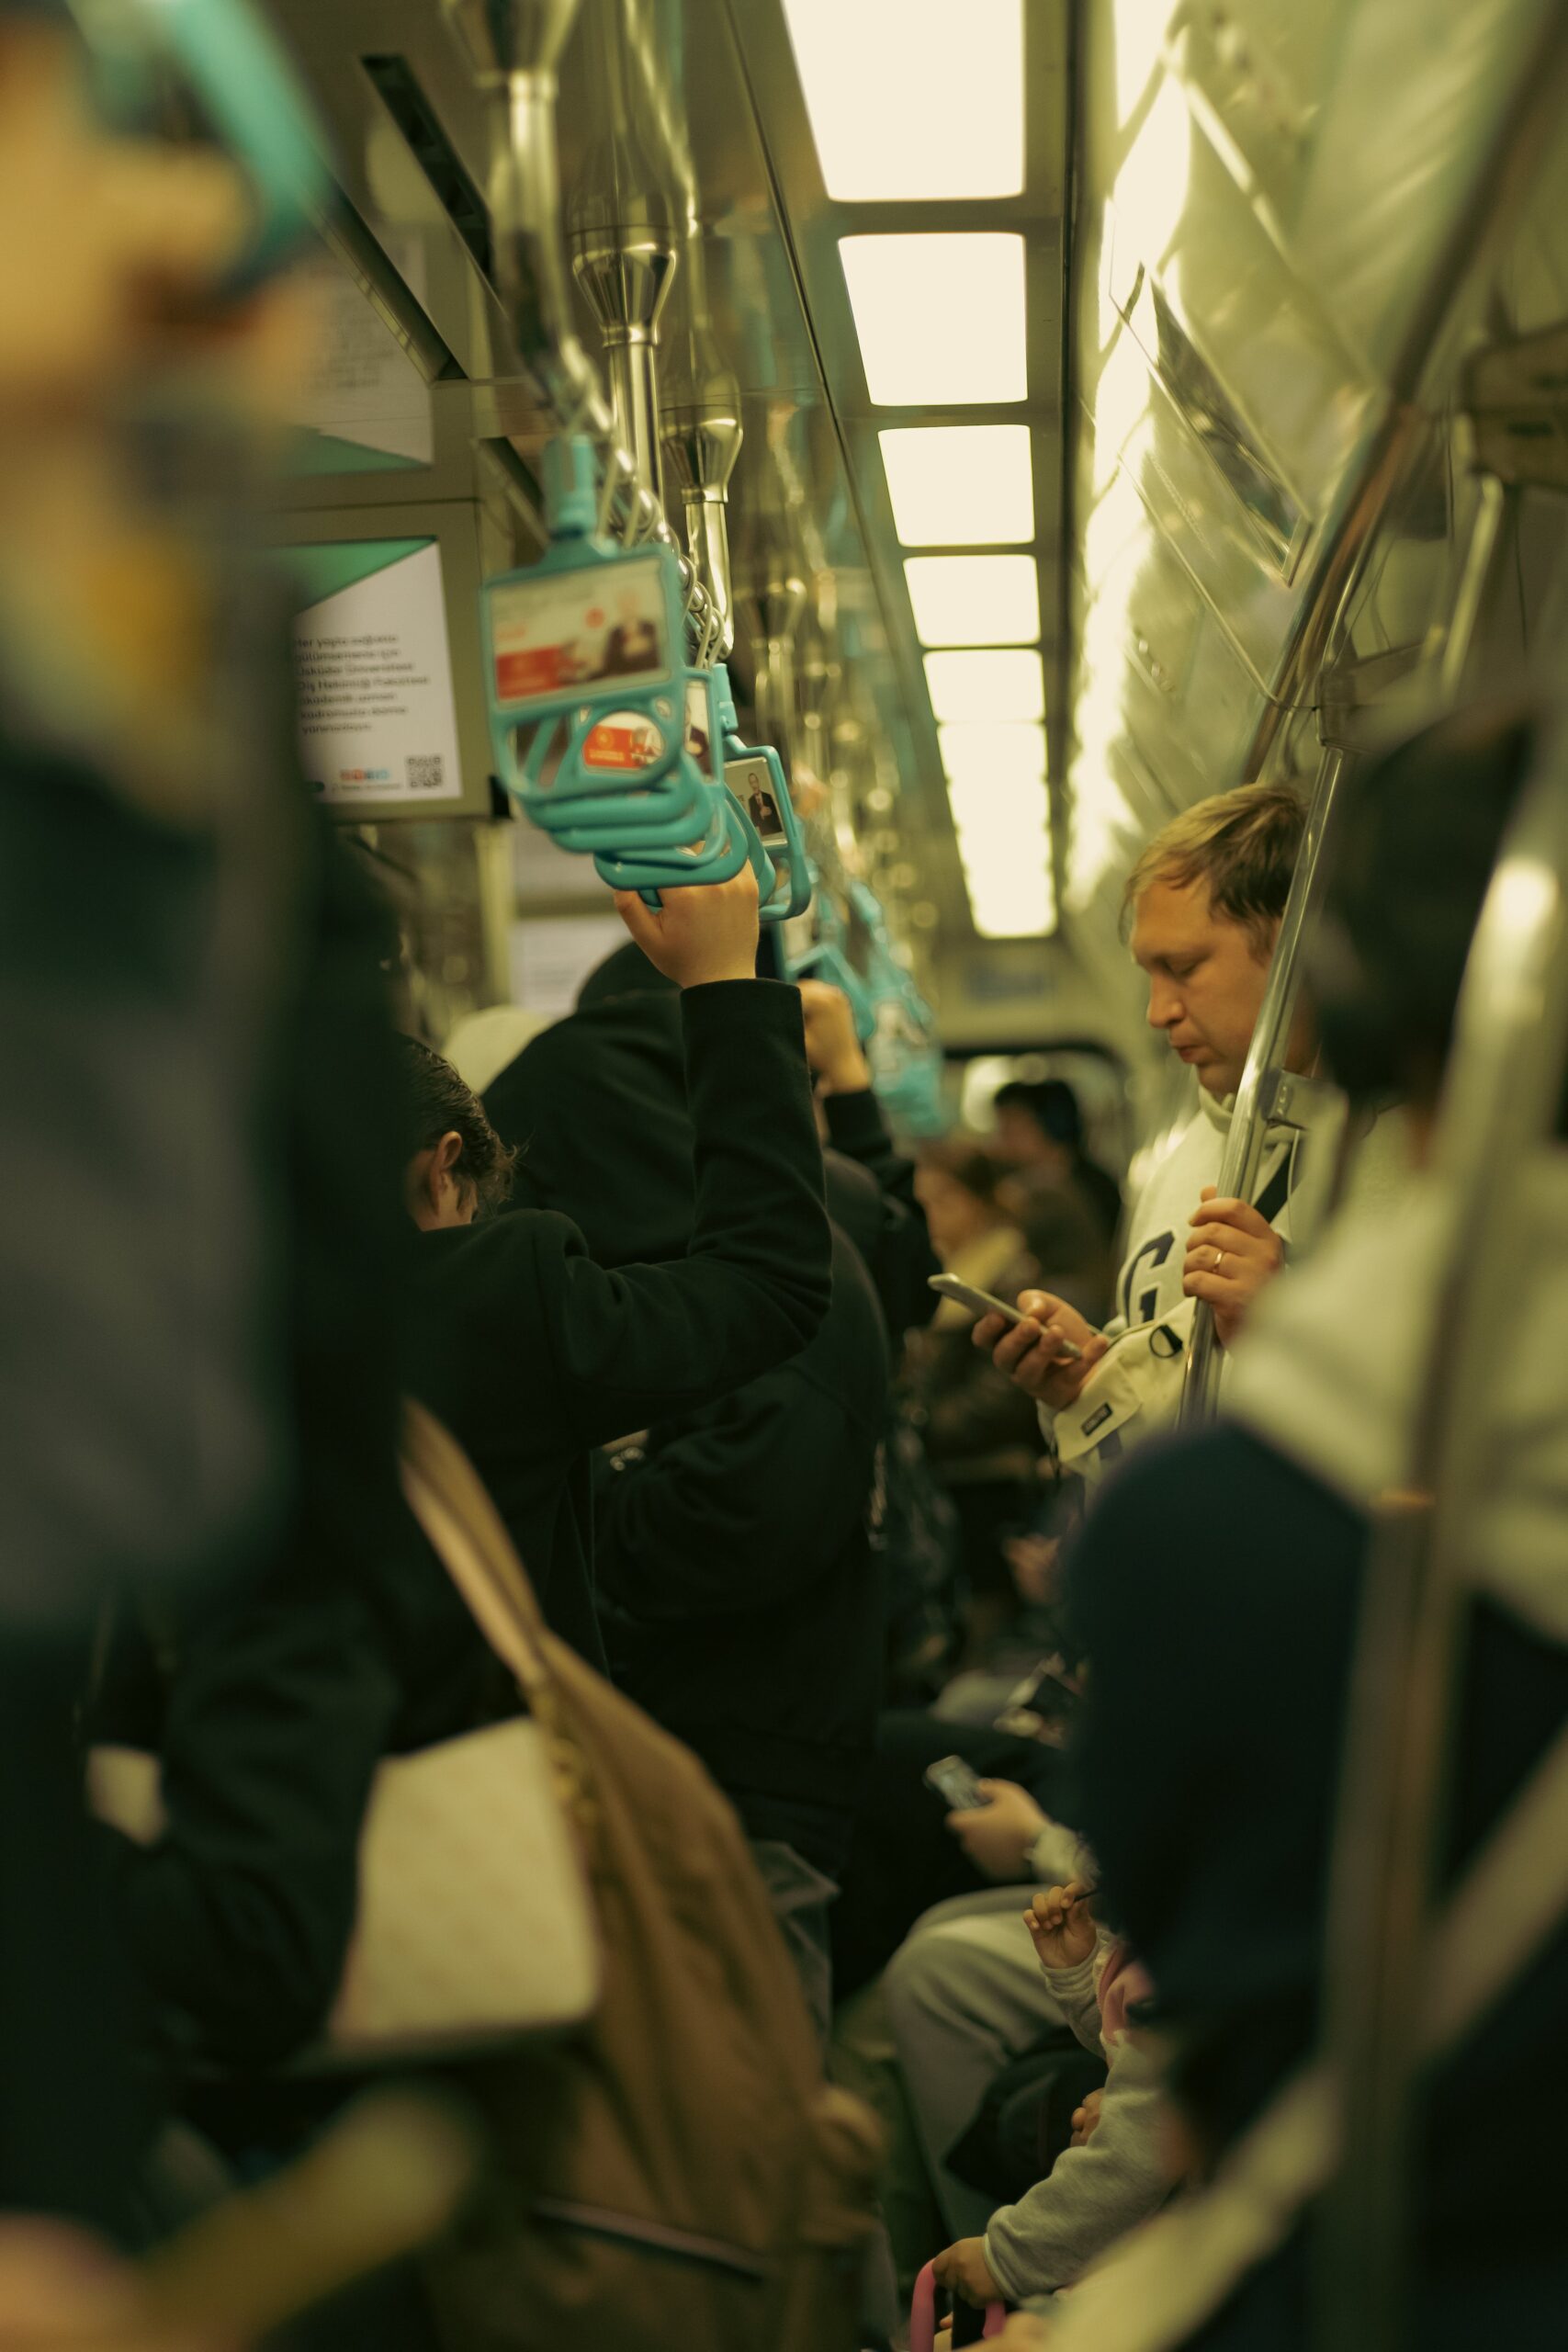 Des personnes dans le métro, l'atmosphère est oppressante.